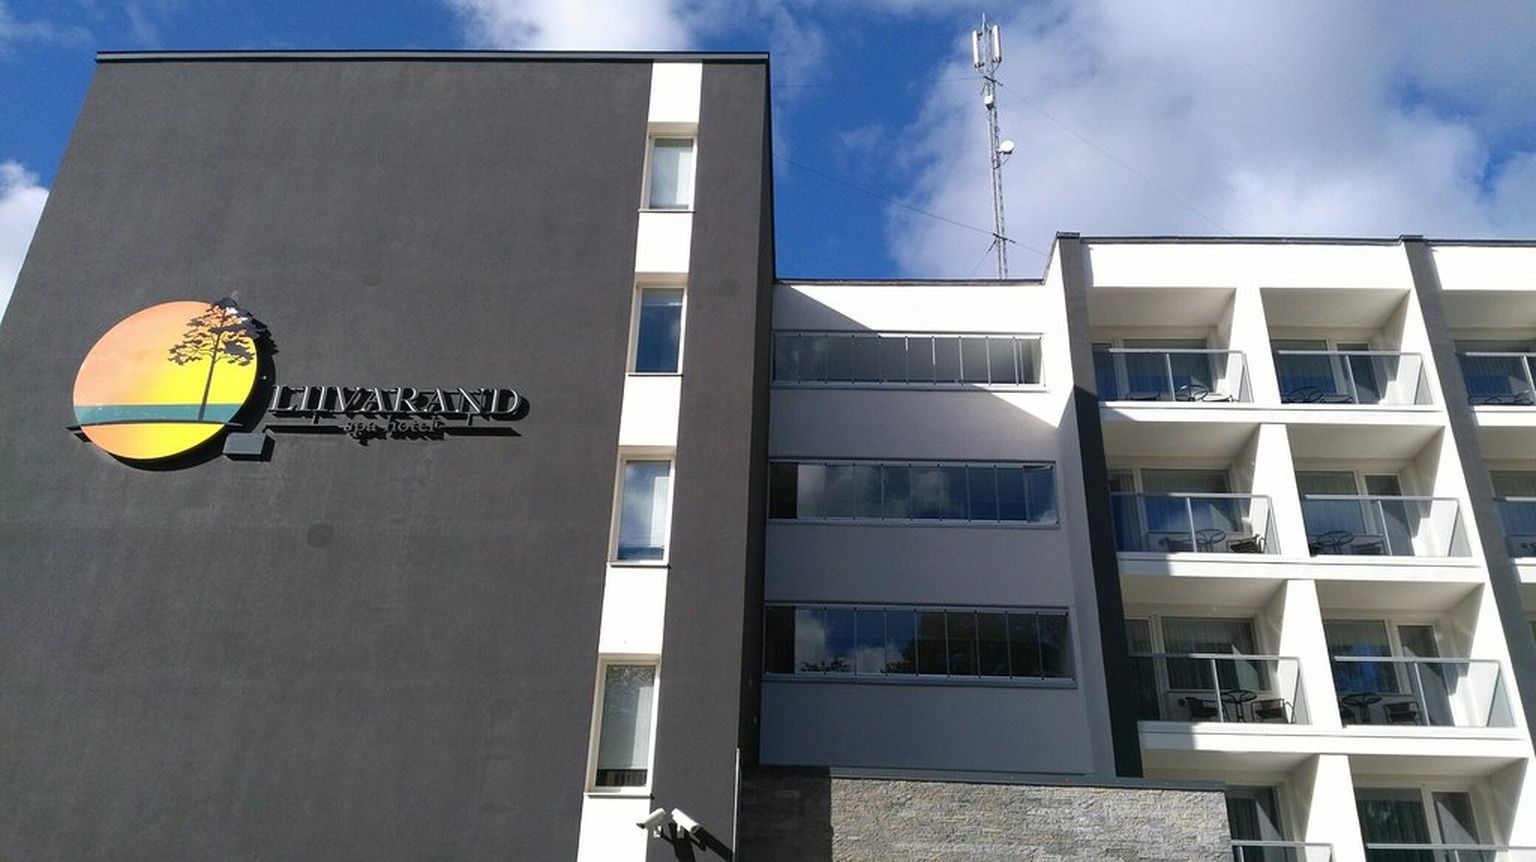 Hotell Liivarand asub Narva-Jõesuus liivaranna vahetus läheduses.